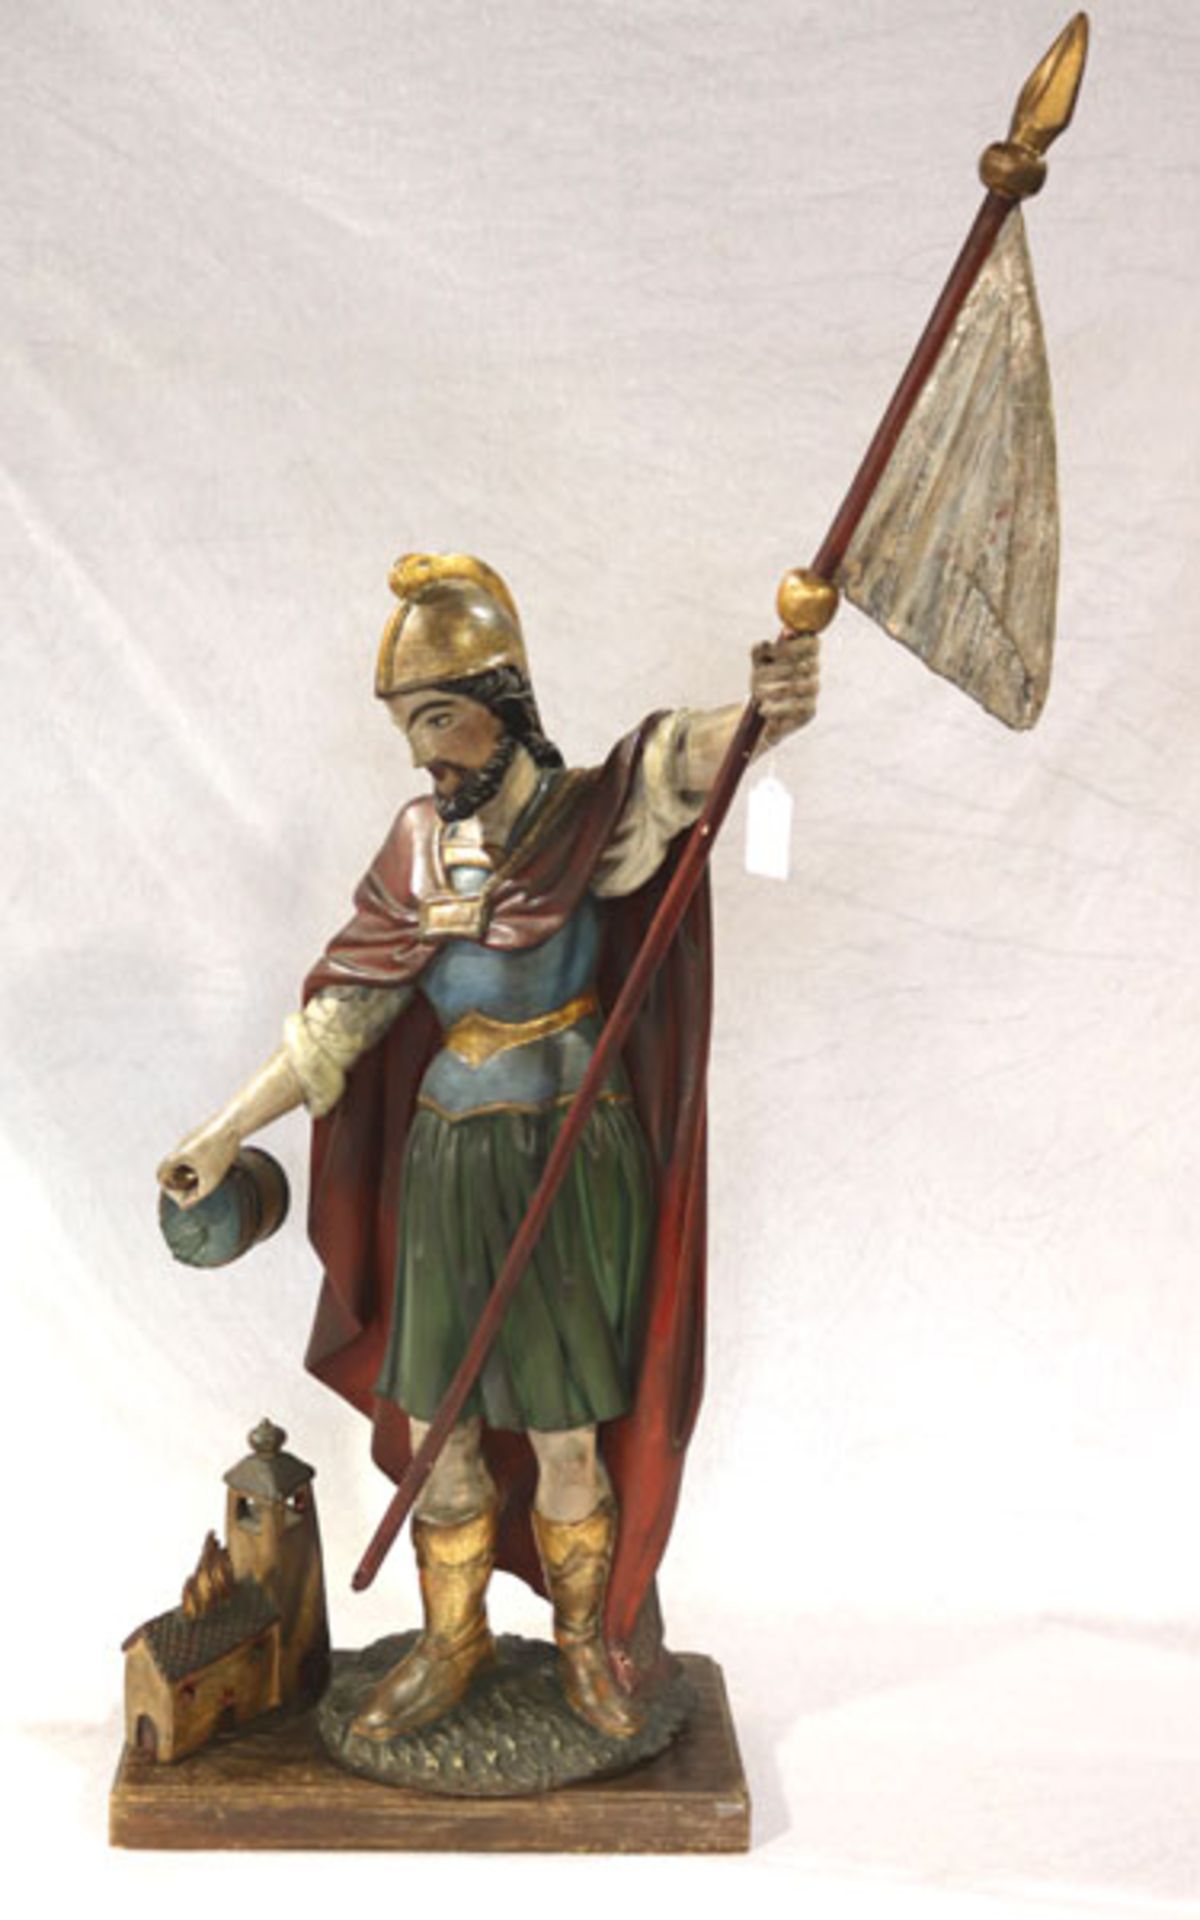 Holz Figurenskulptur 'Hl. Florian', farbig gefaßt, H 100 cm, B 37 cm, T 33 cm, teils bestossen,